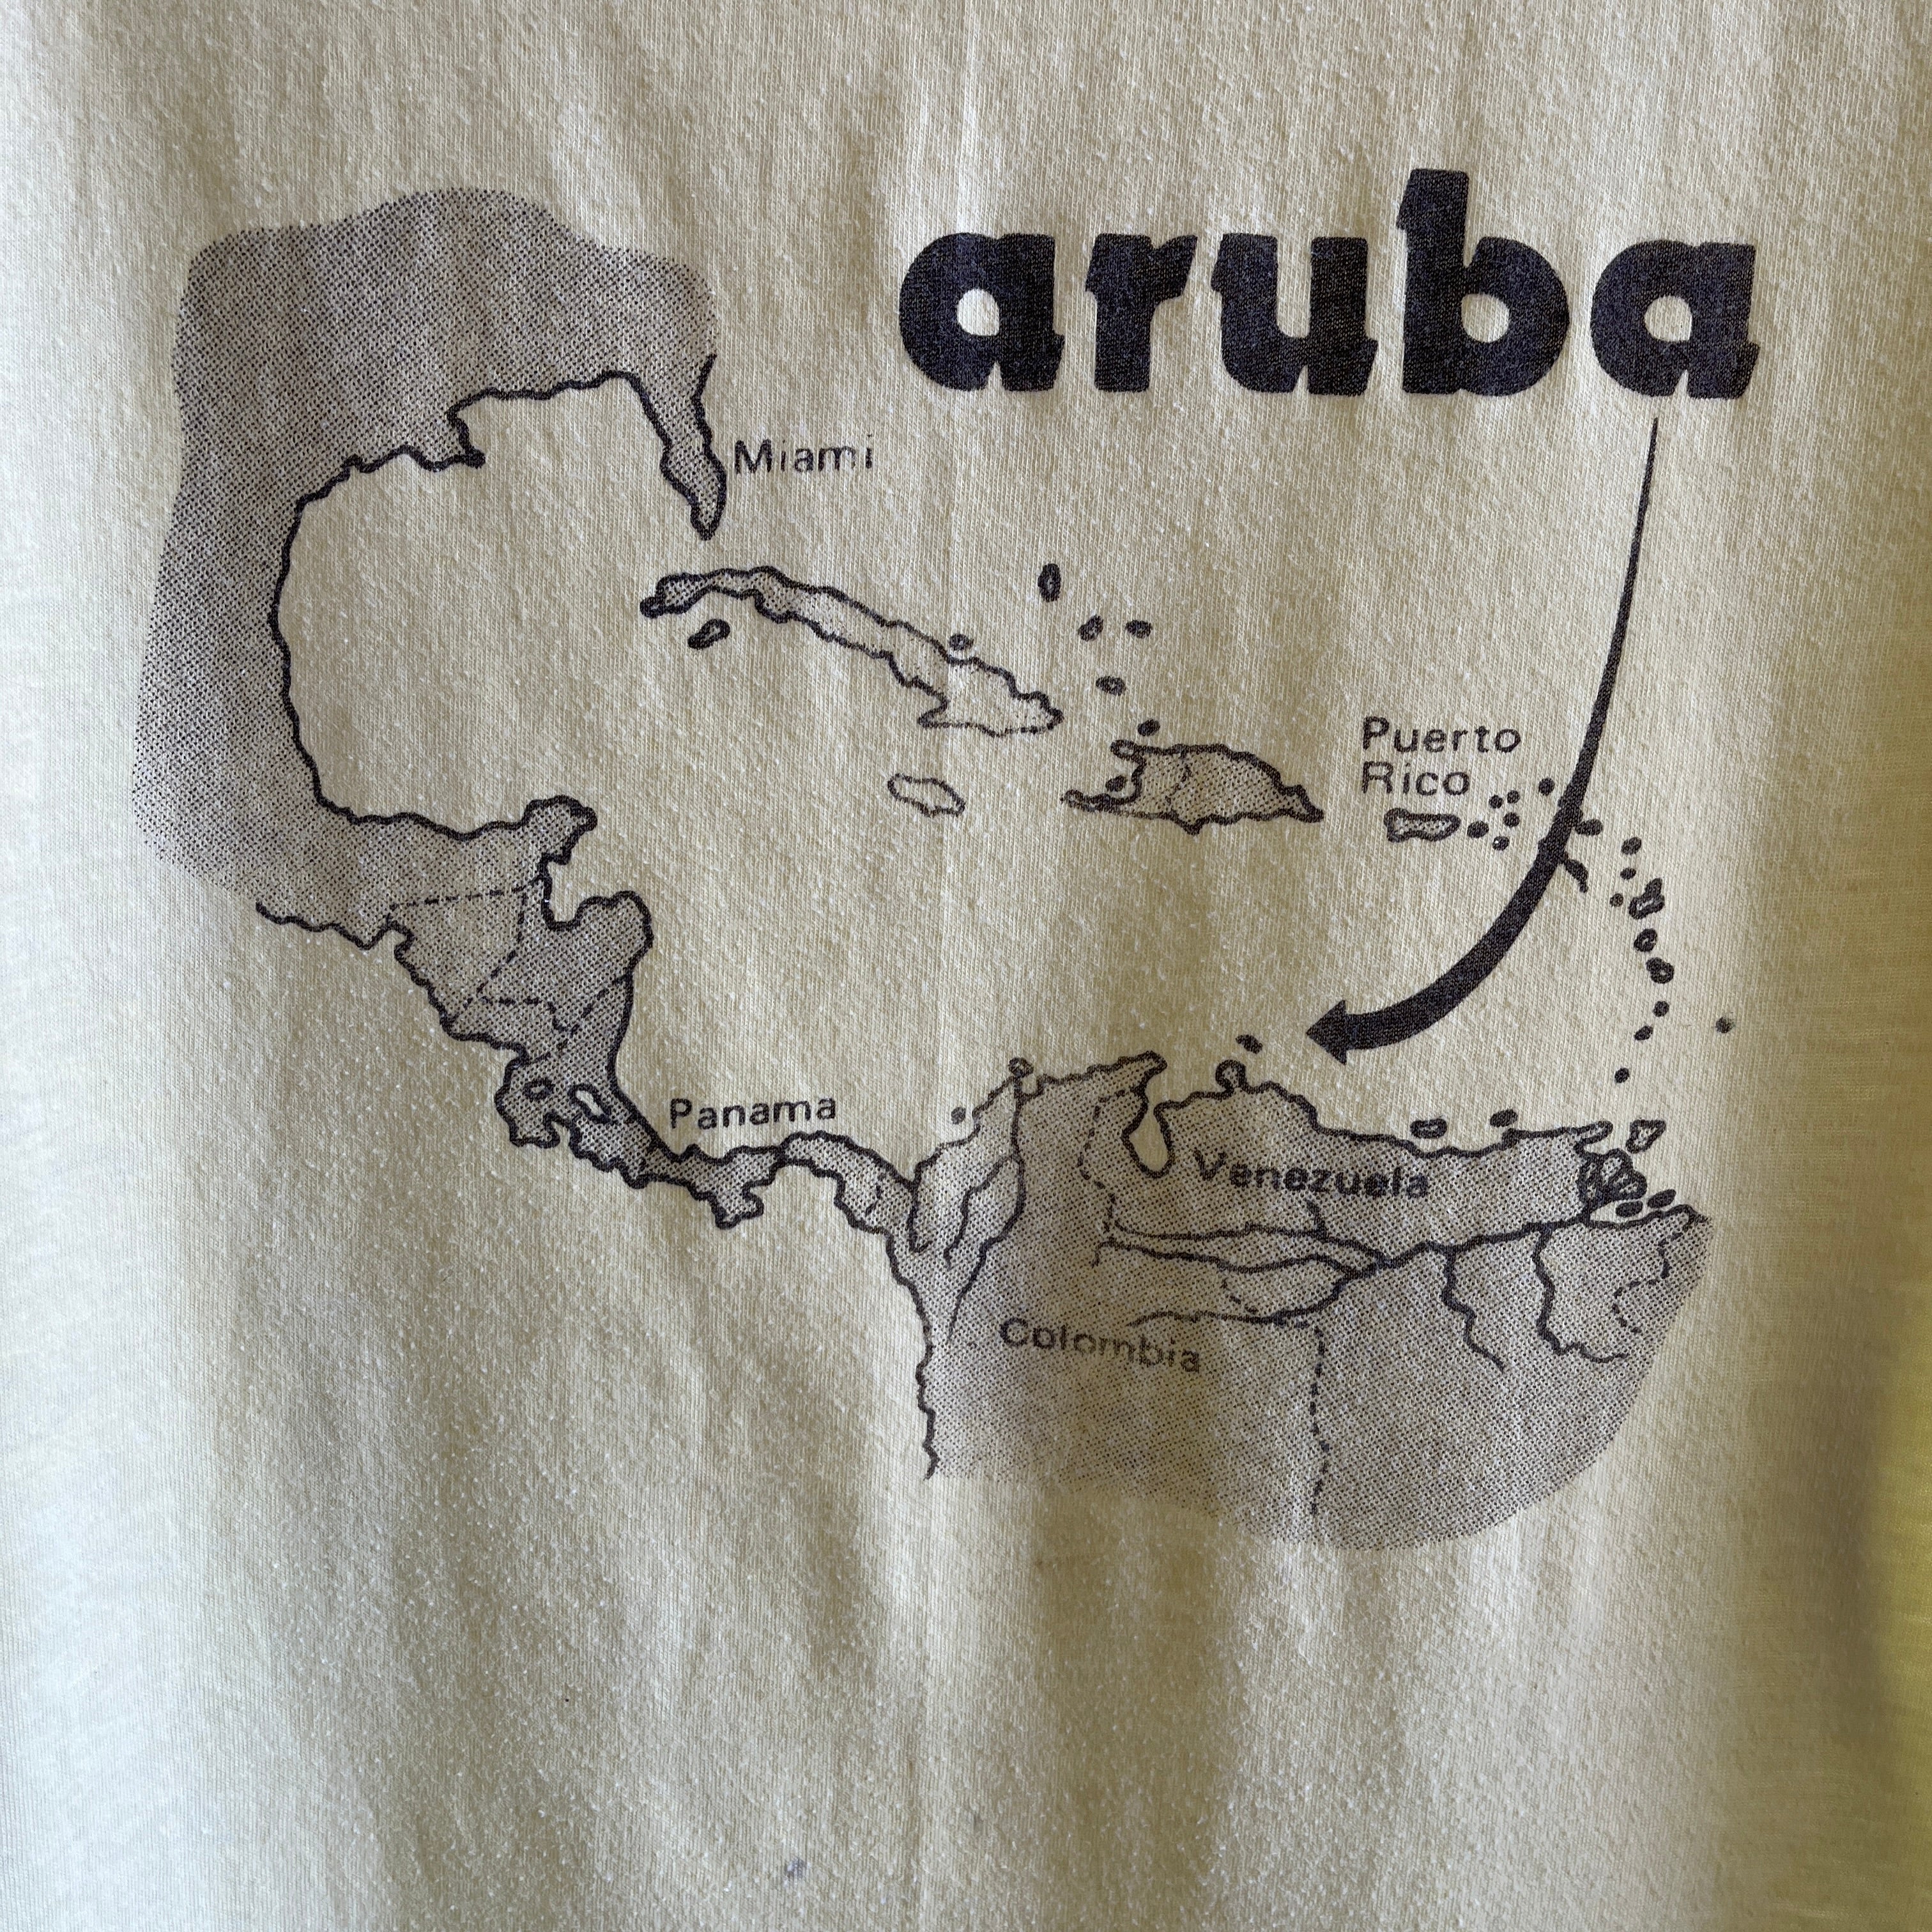 T-shirt de touriste taché d'Aruba des années 1980